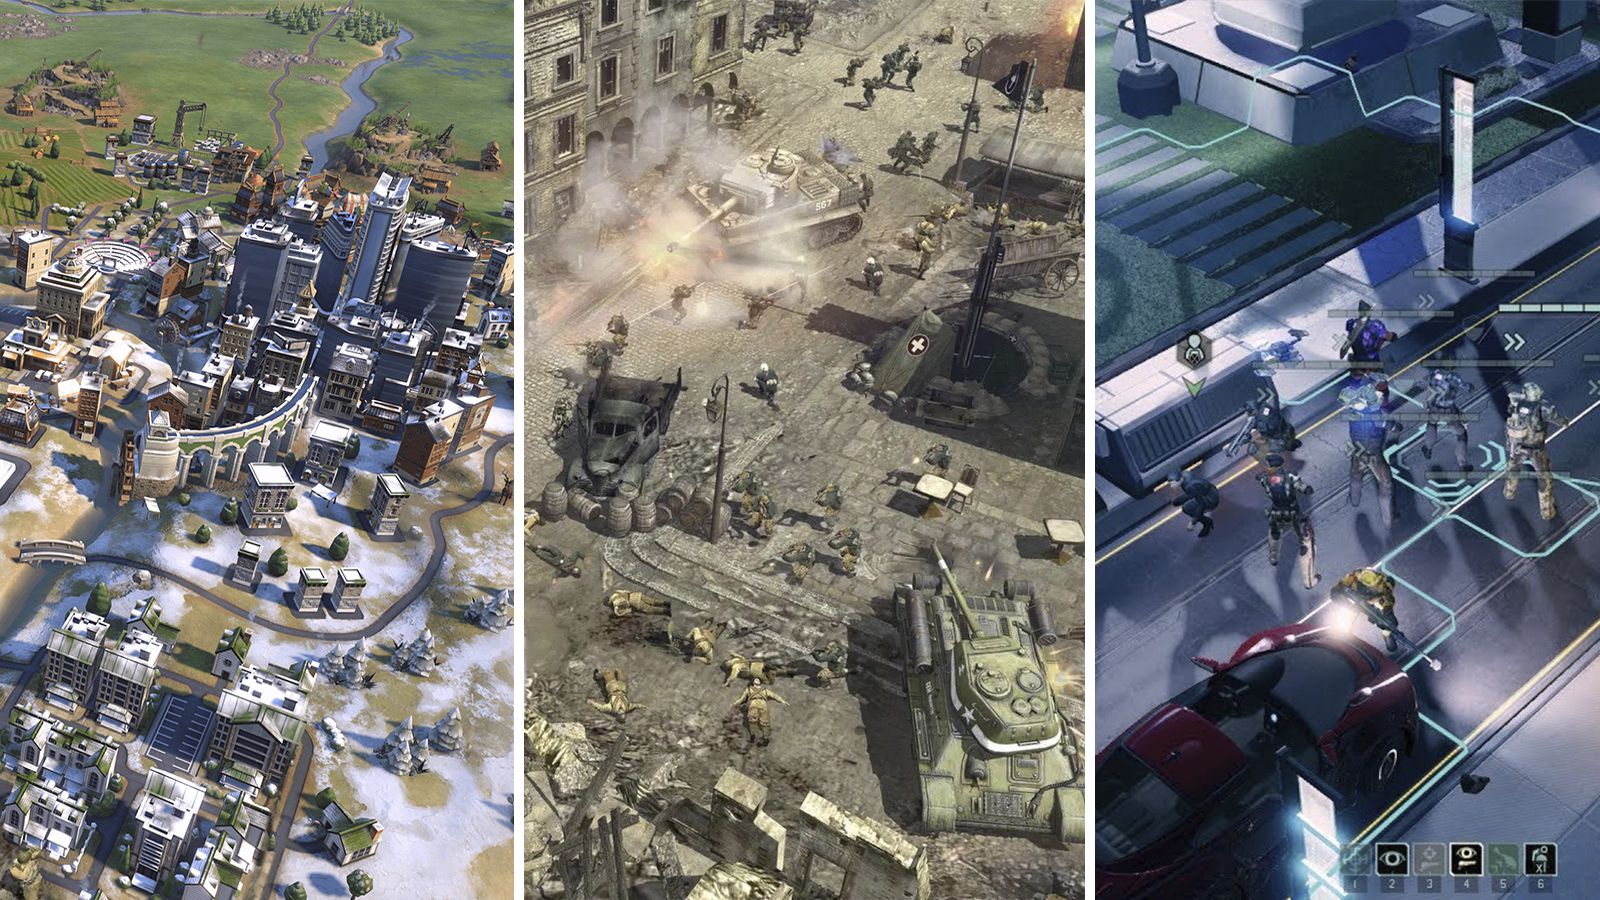 Lista traz os melhores jogos de guerra para iOS e Android